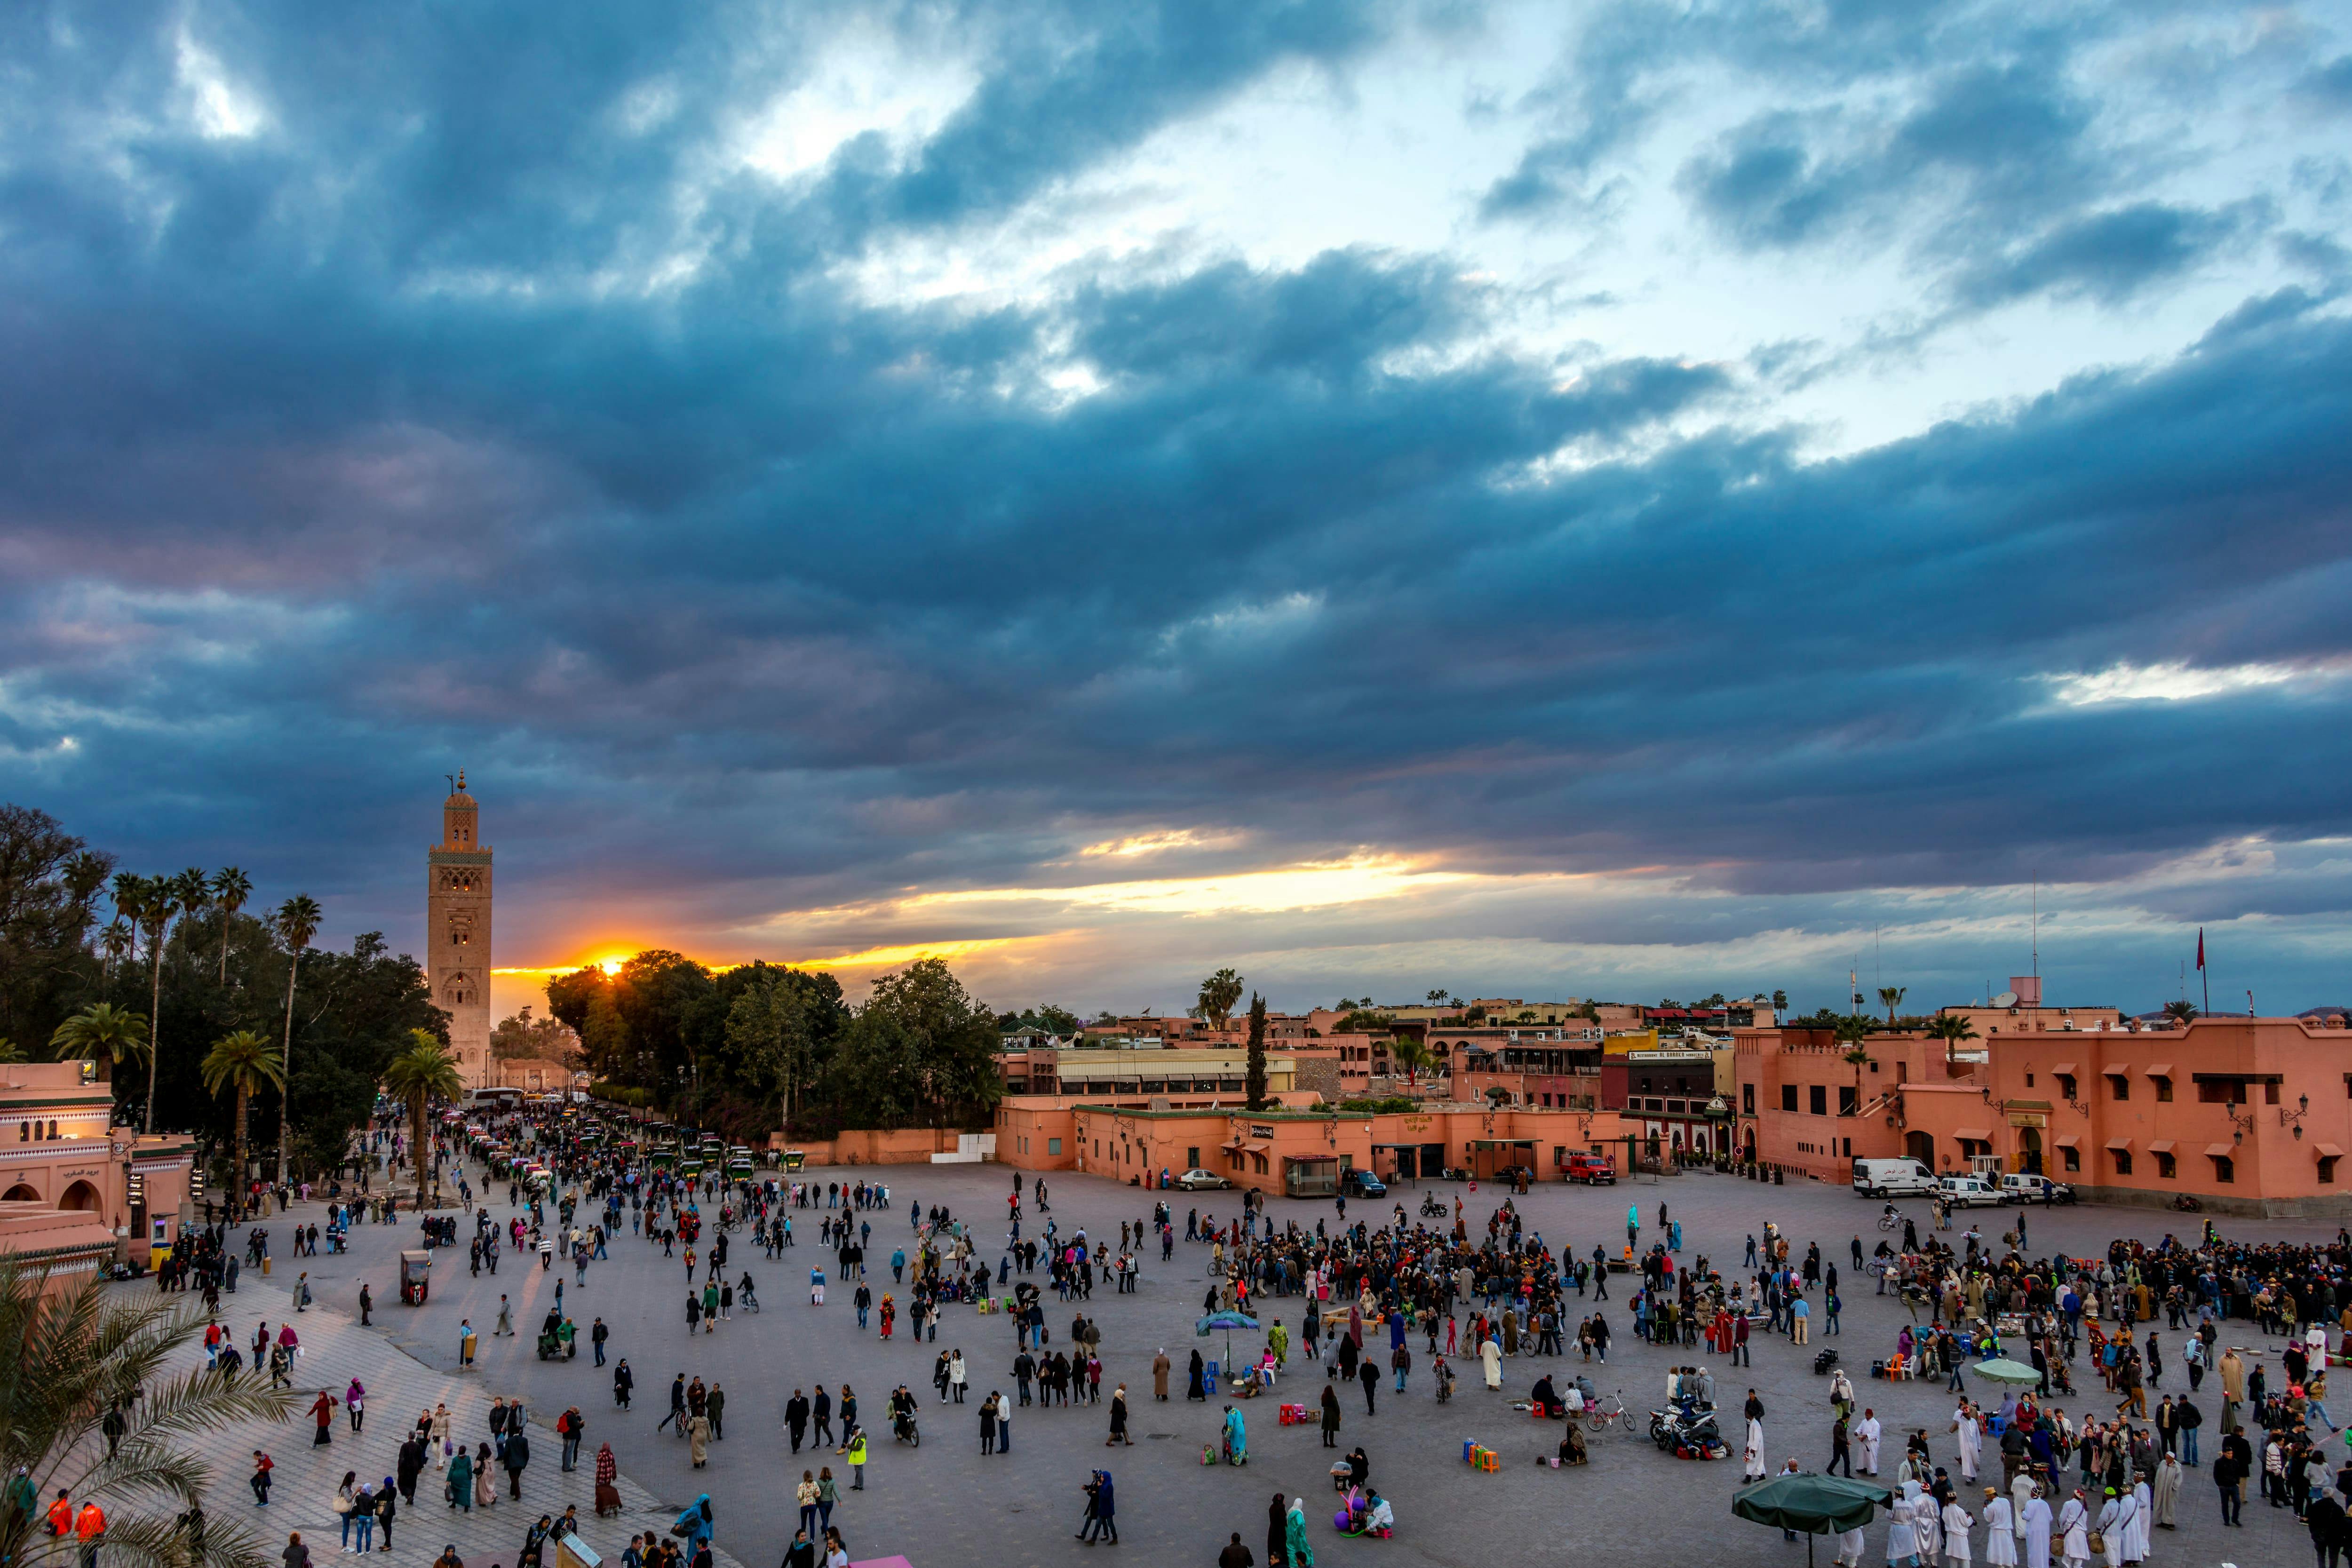 Magical Marrakech Tour